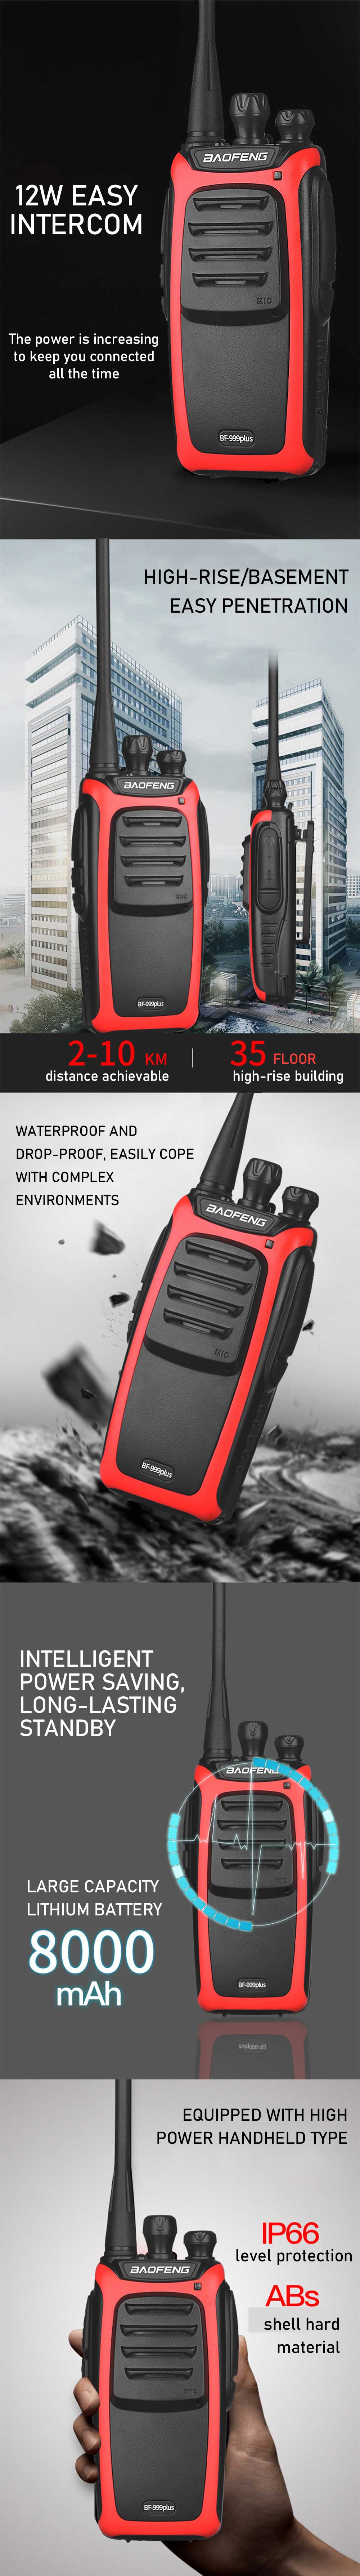 Baofeng VF-999plus 12W IP66 Waterproof Walkie Talkie 16 Channels 400-470MHz Portable Two Way Handheld Radio